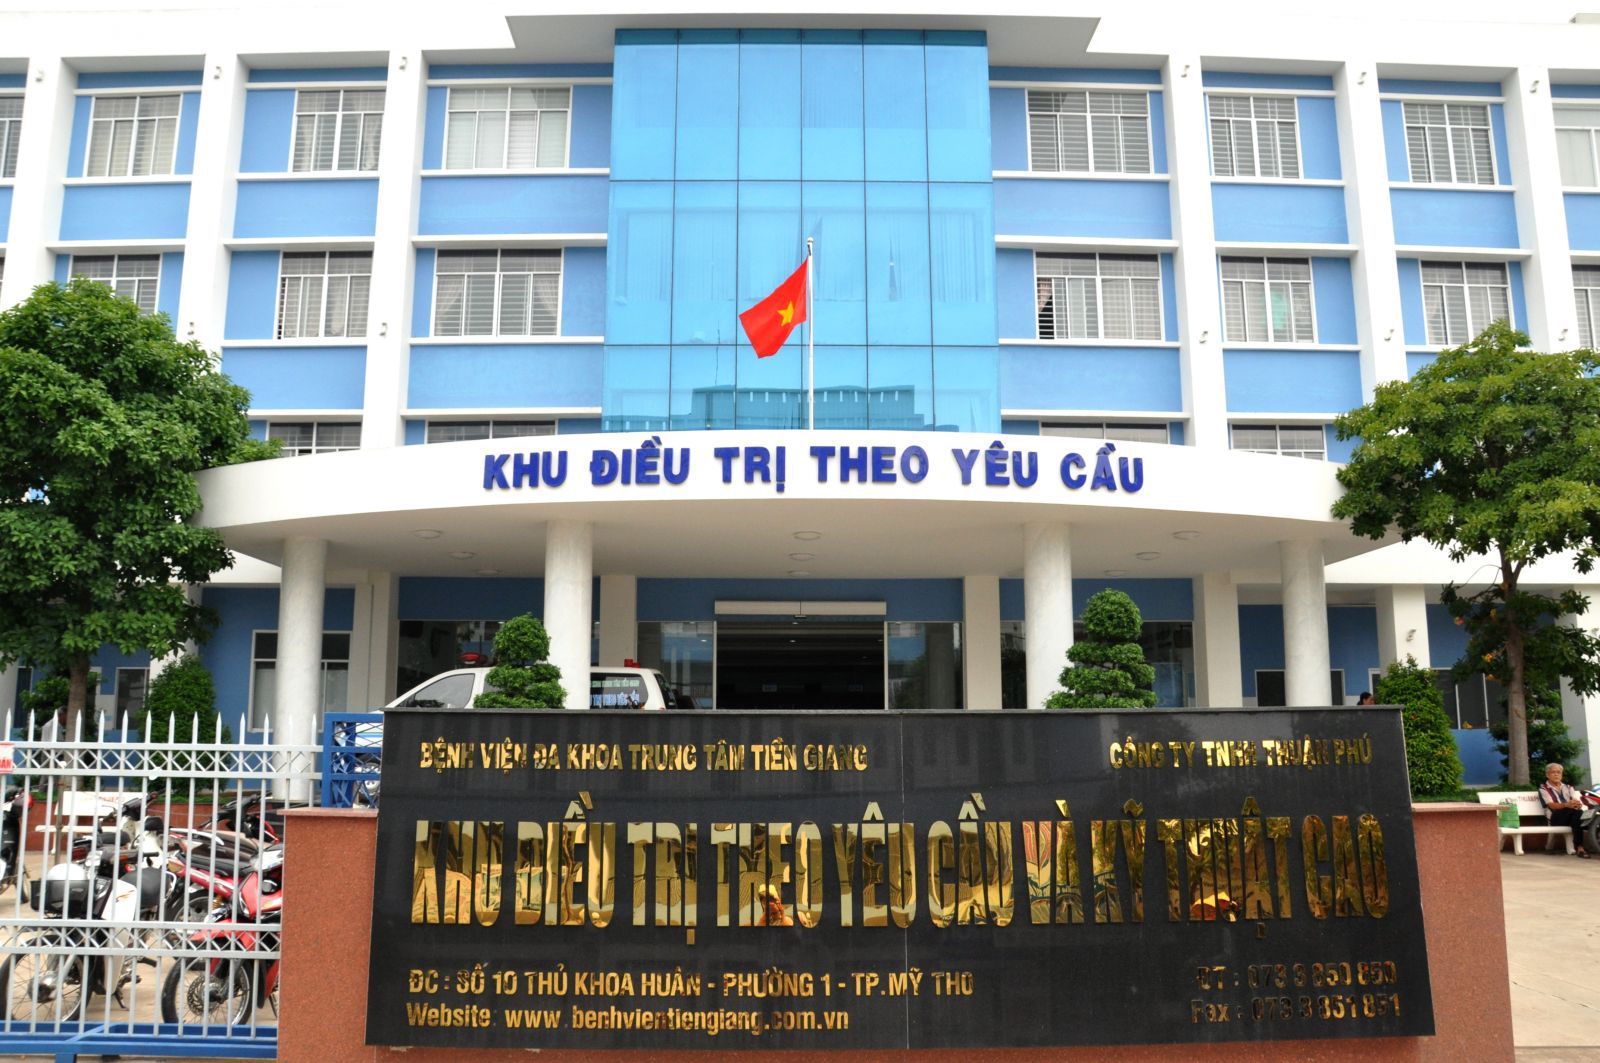 DANH SÁCH CÁC BỆNH VIỆN TẠI TỈNH TIỀN GIANG Bệnh viện Đa khoa trung tâm Tiền Giang